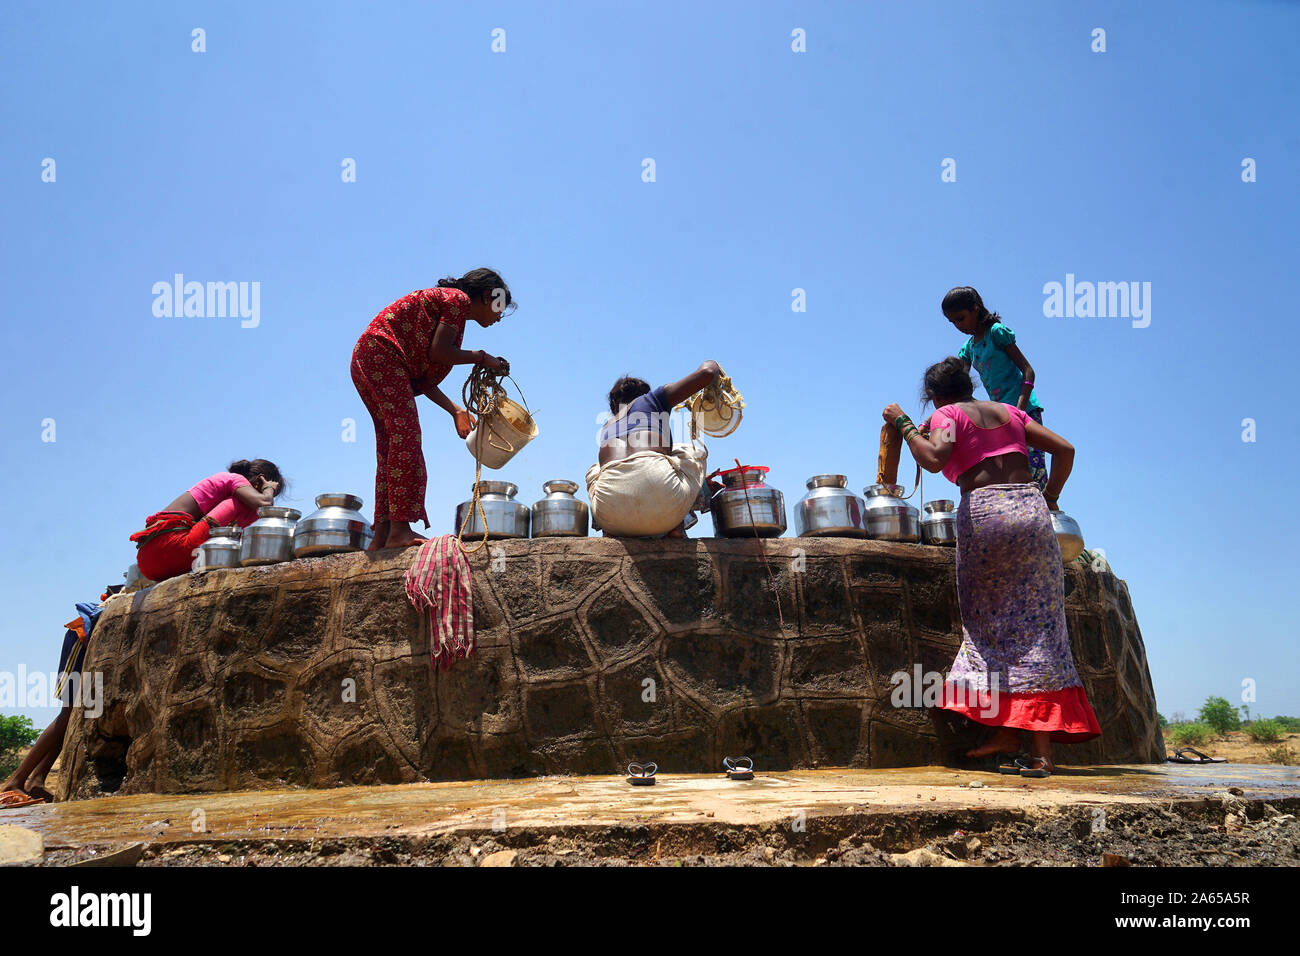 Les femmes vont chercher de l'eau de puits au village de Dhakne Shahapur, Thane Maharashtra, Inde, Asie Banque D'Images